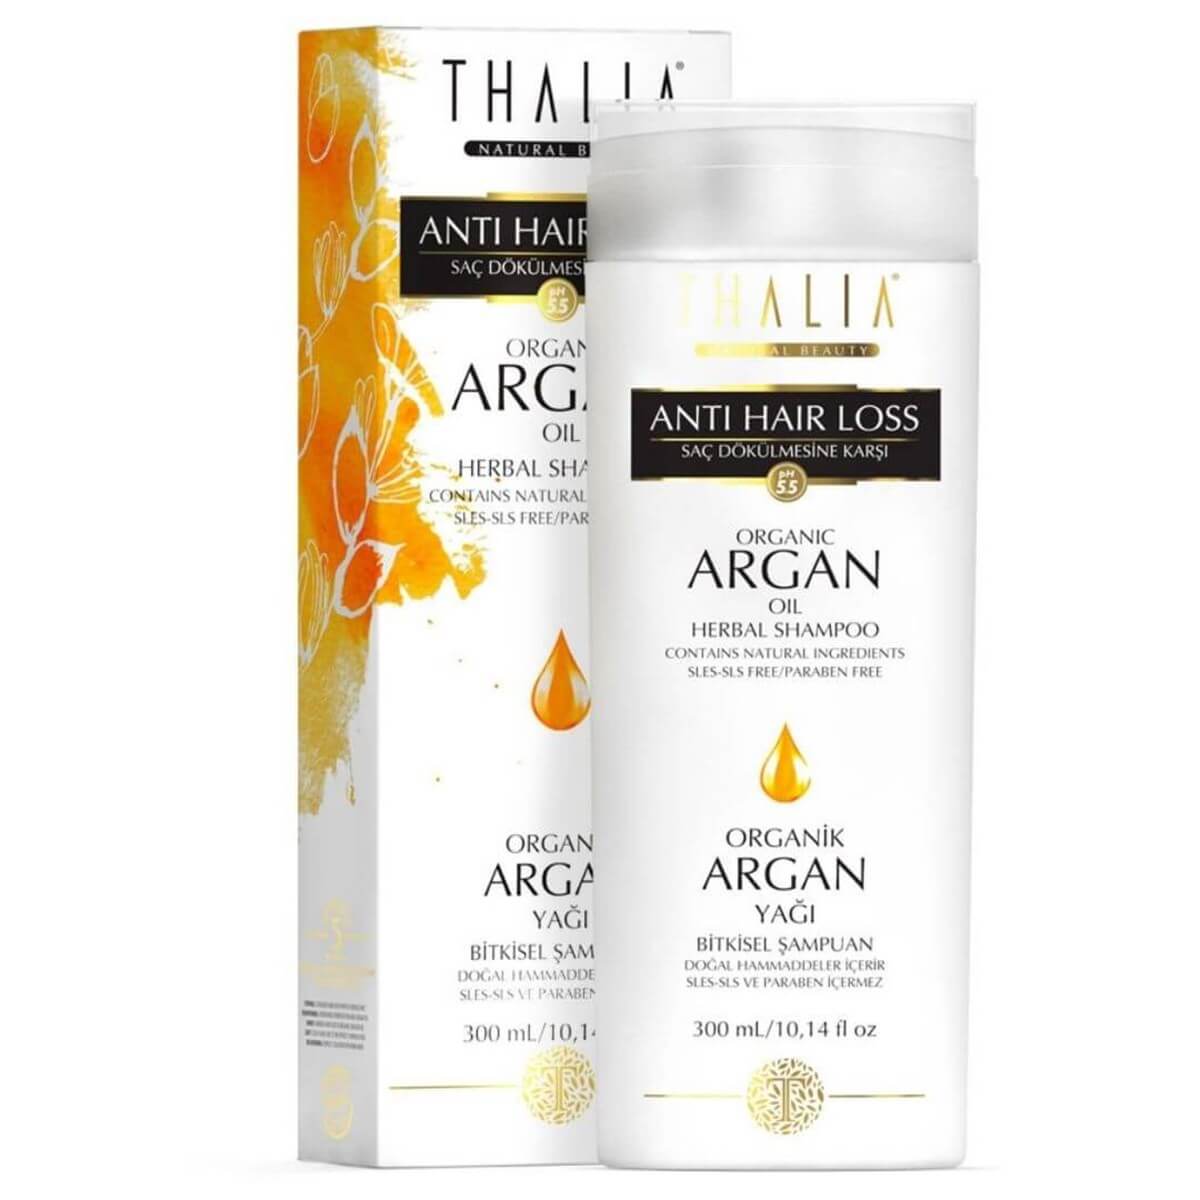 Thalia Organik Argan Yağlı Şampuan 300 ml